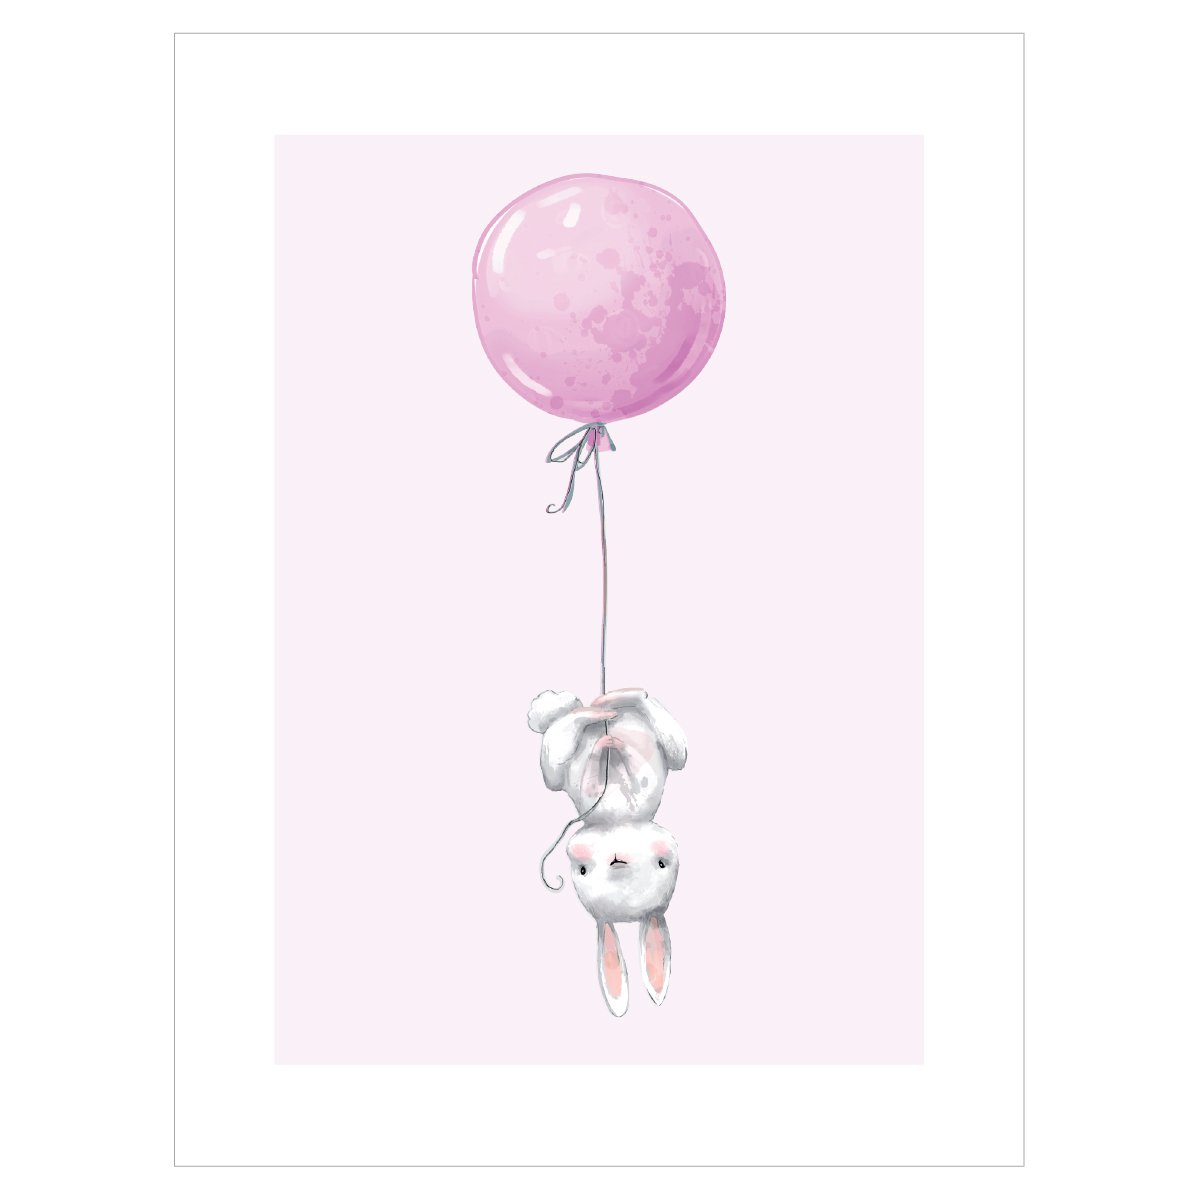 Plakat do pokoju  dziecka - królik lecący na balonie#kolor_rozowy